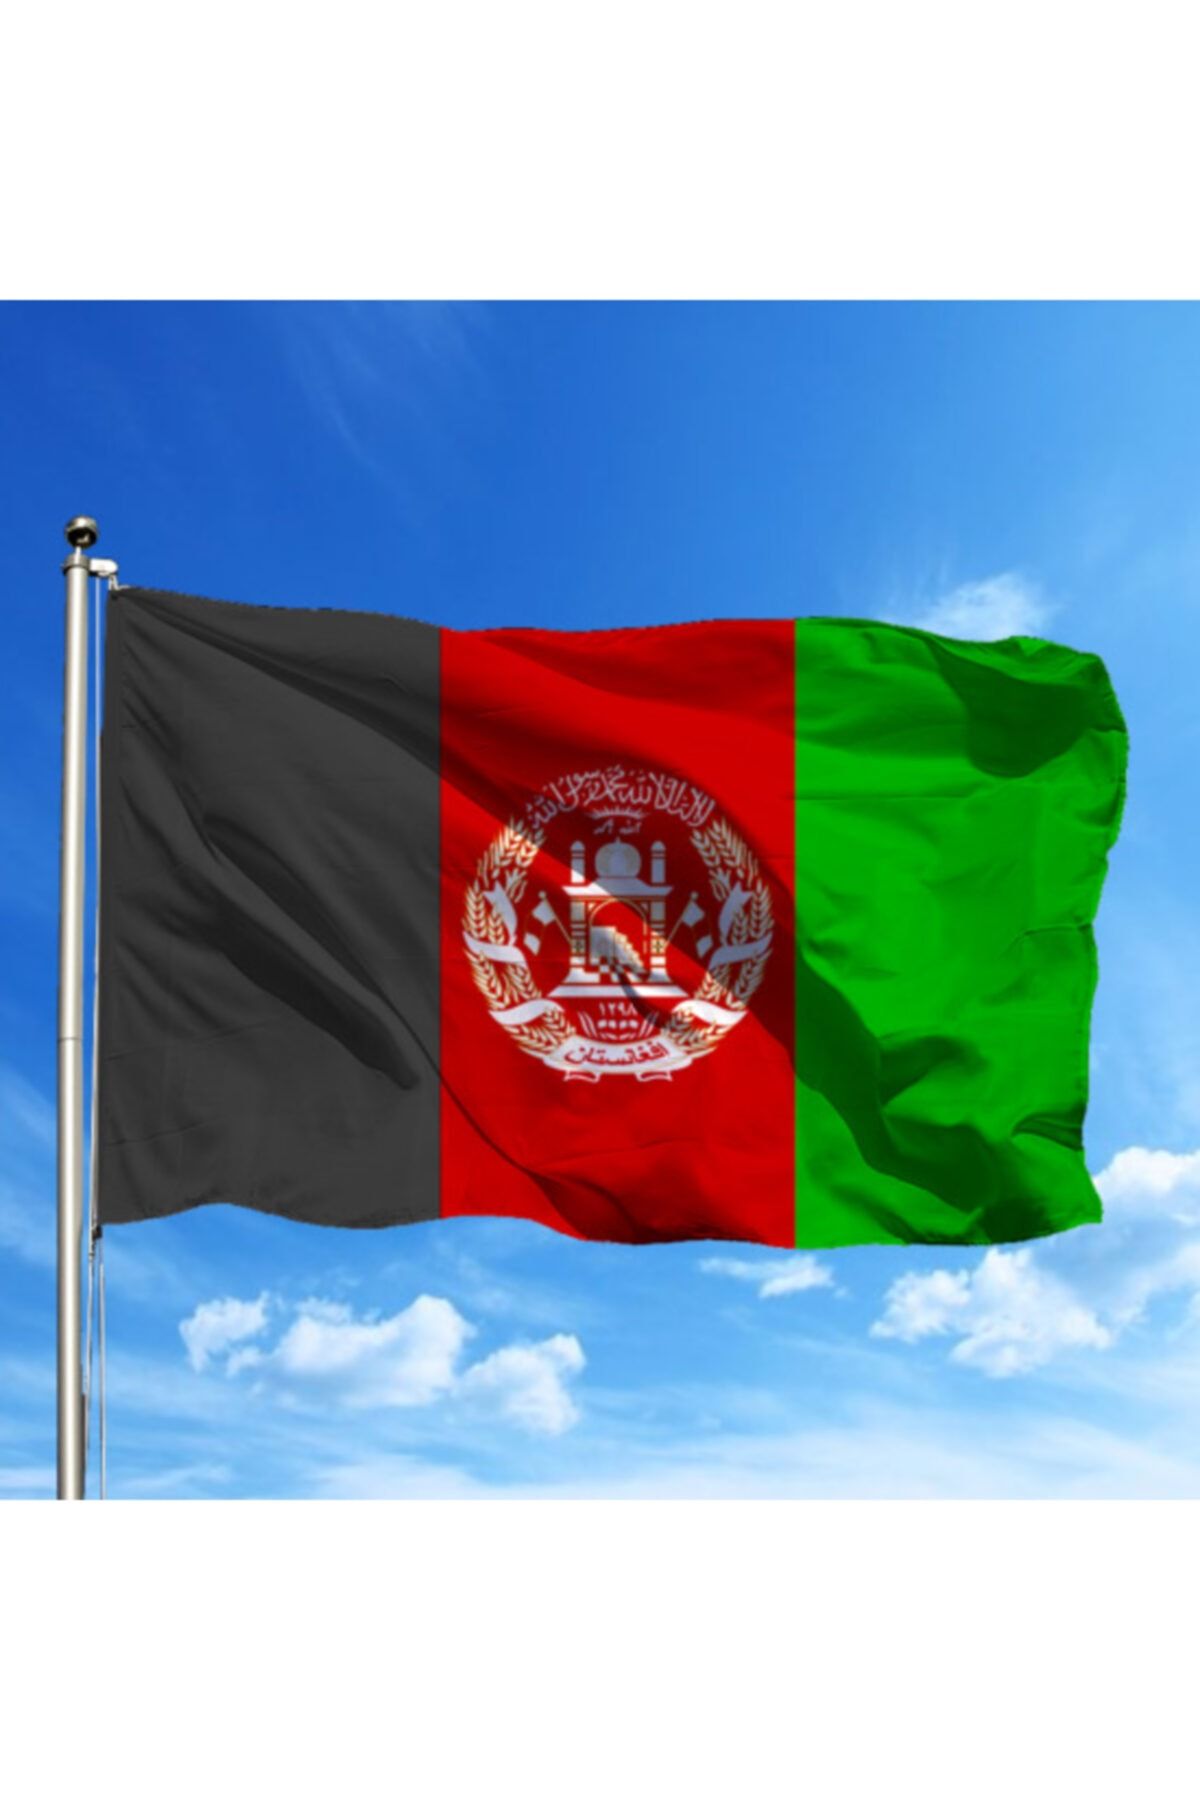 Özgüvenal Afganistan Ülke Bayrağı 70x105